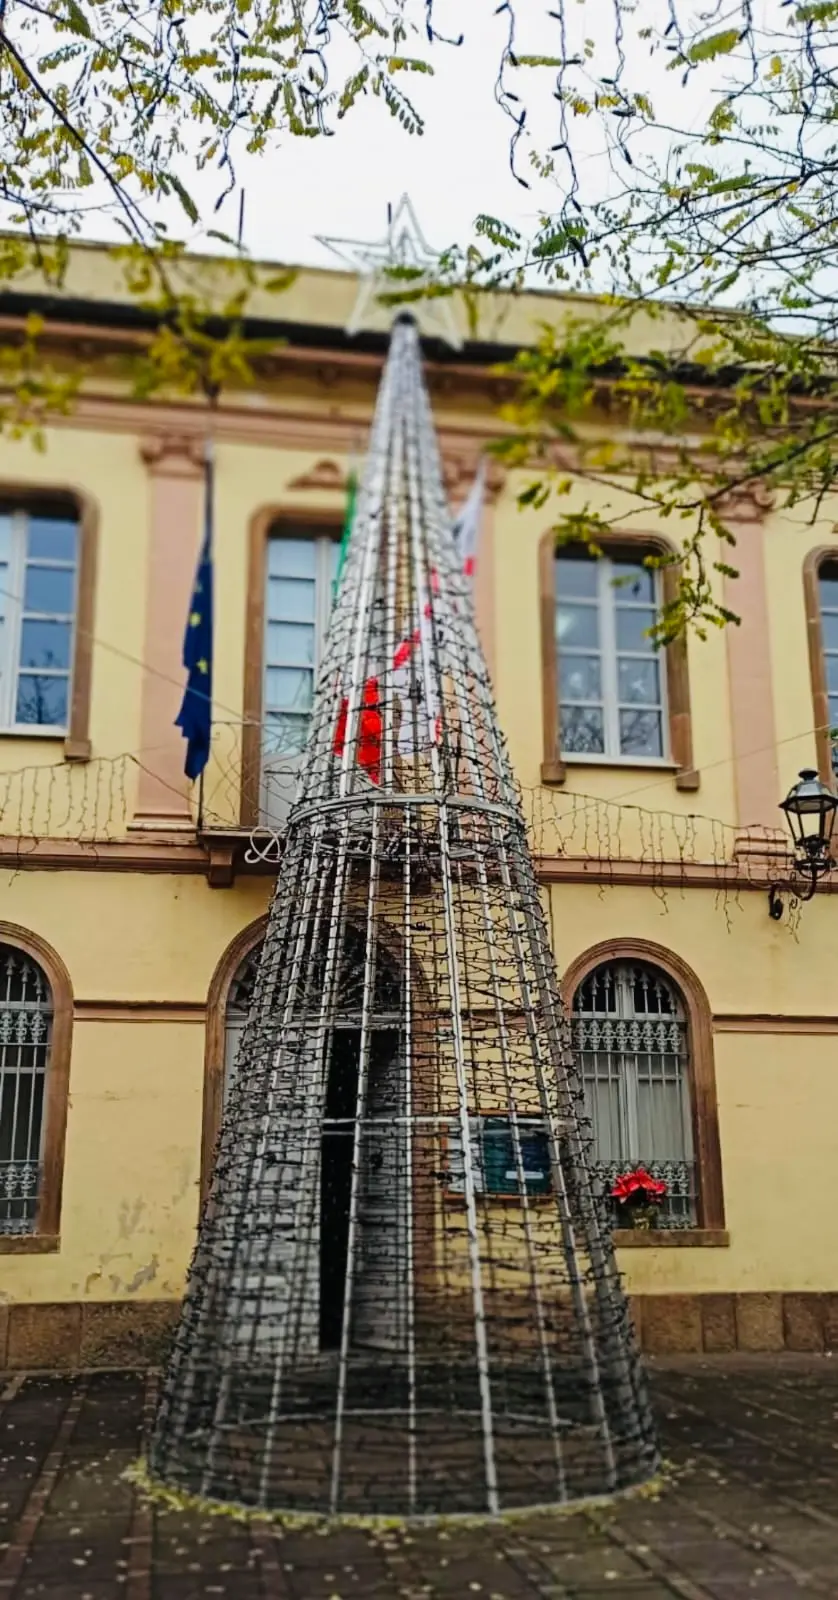 L'albero di Natale in alluminio che sta facendo discutere (foto concessa)